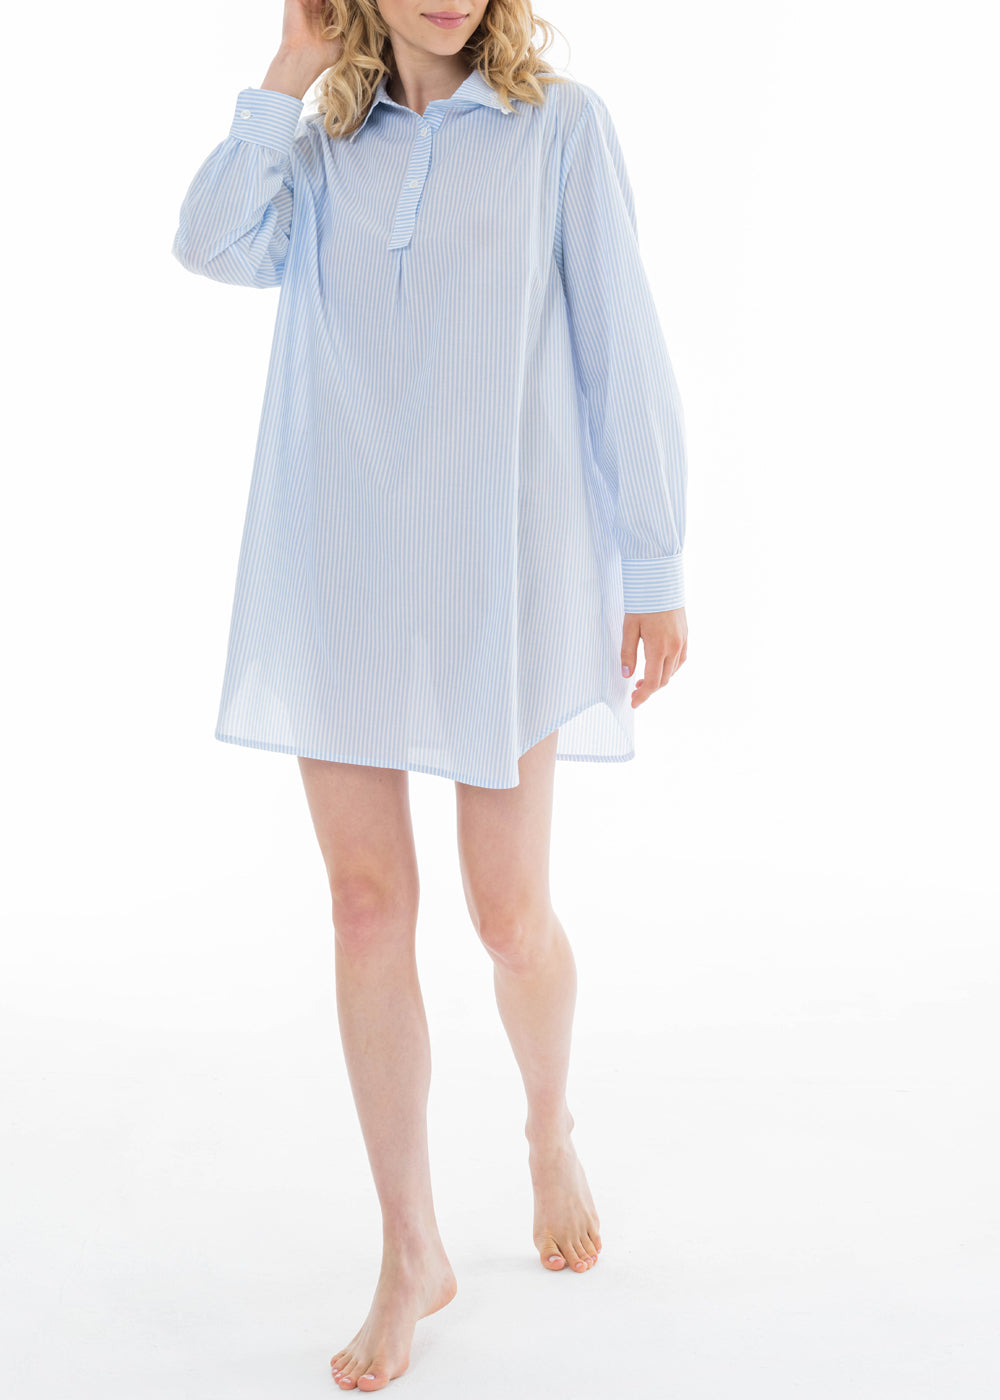 Celestine Nachthemd CAPRI hellblau weiß gestreift Hemdkragen langarm